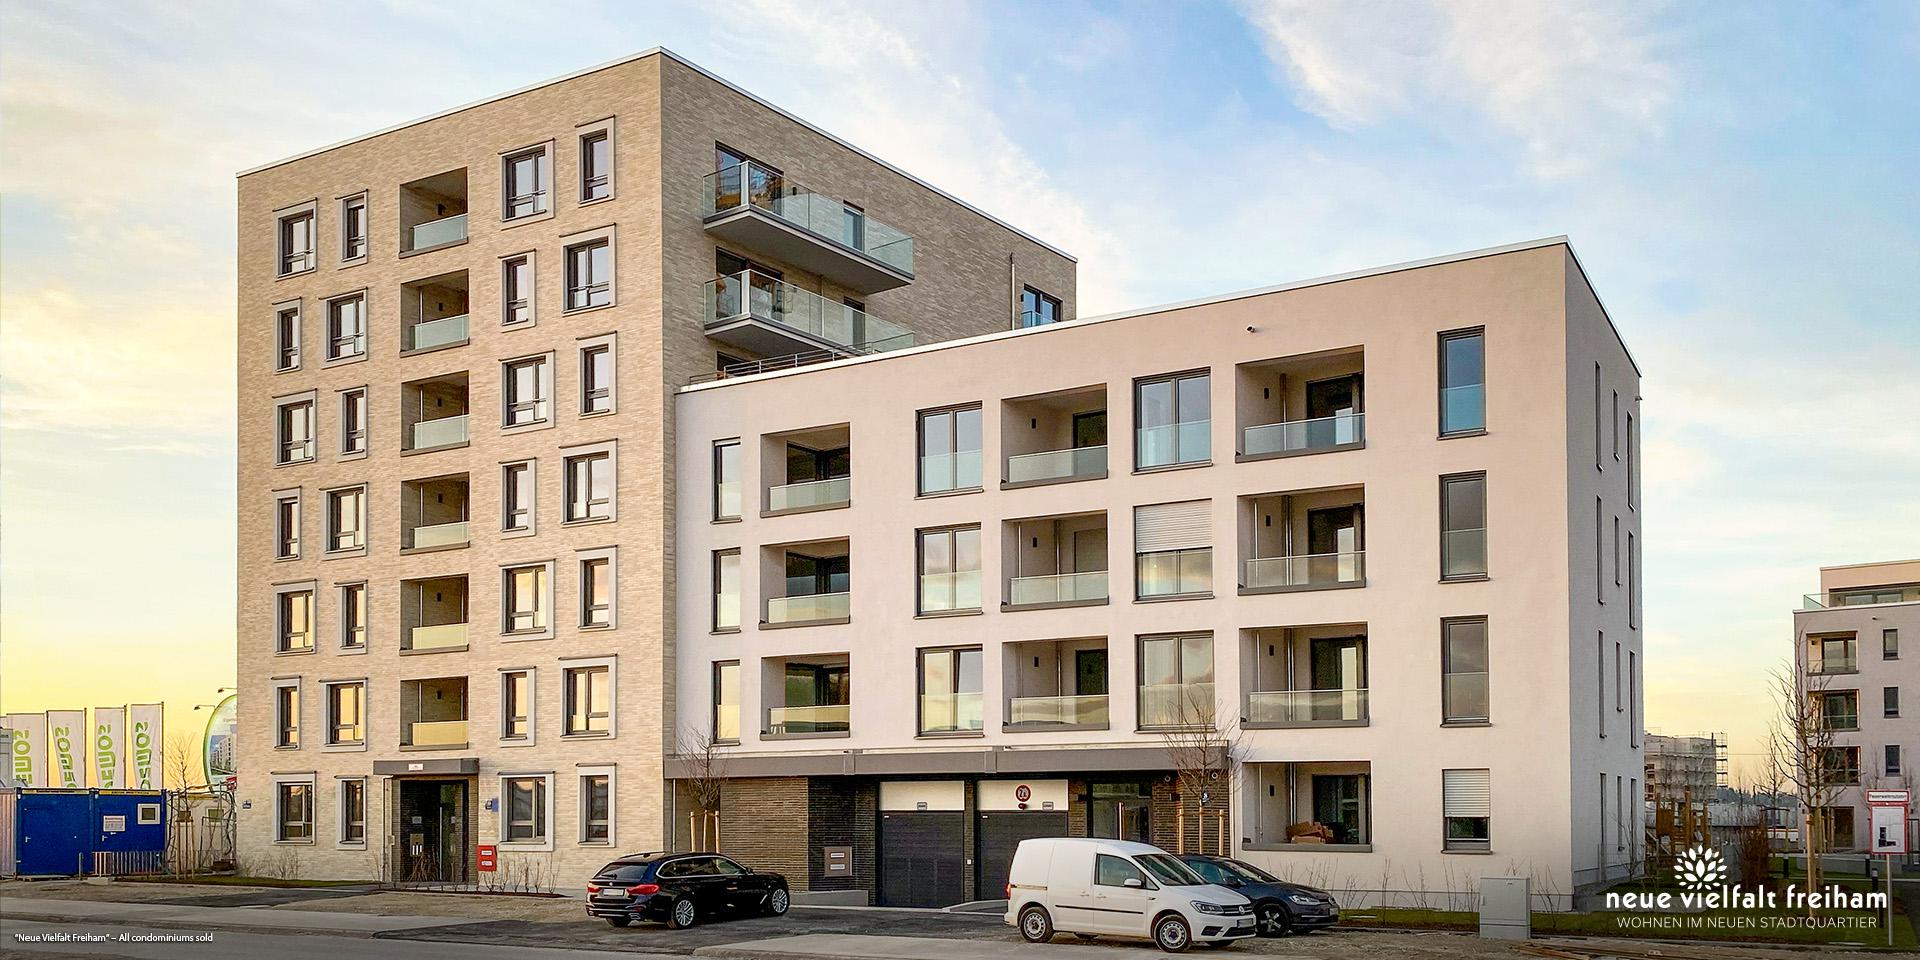 'Neue Vielfalt Freiham' in Munich-Freiham: All condominiums sold